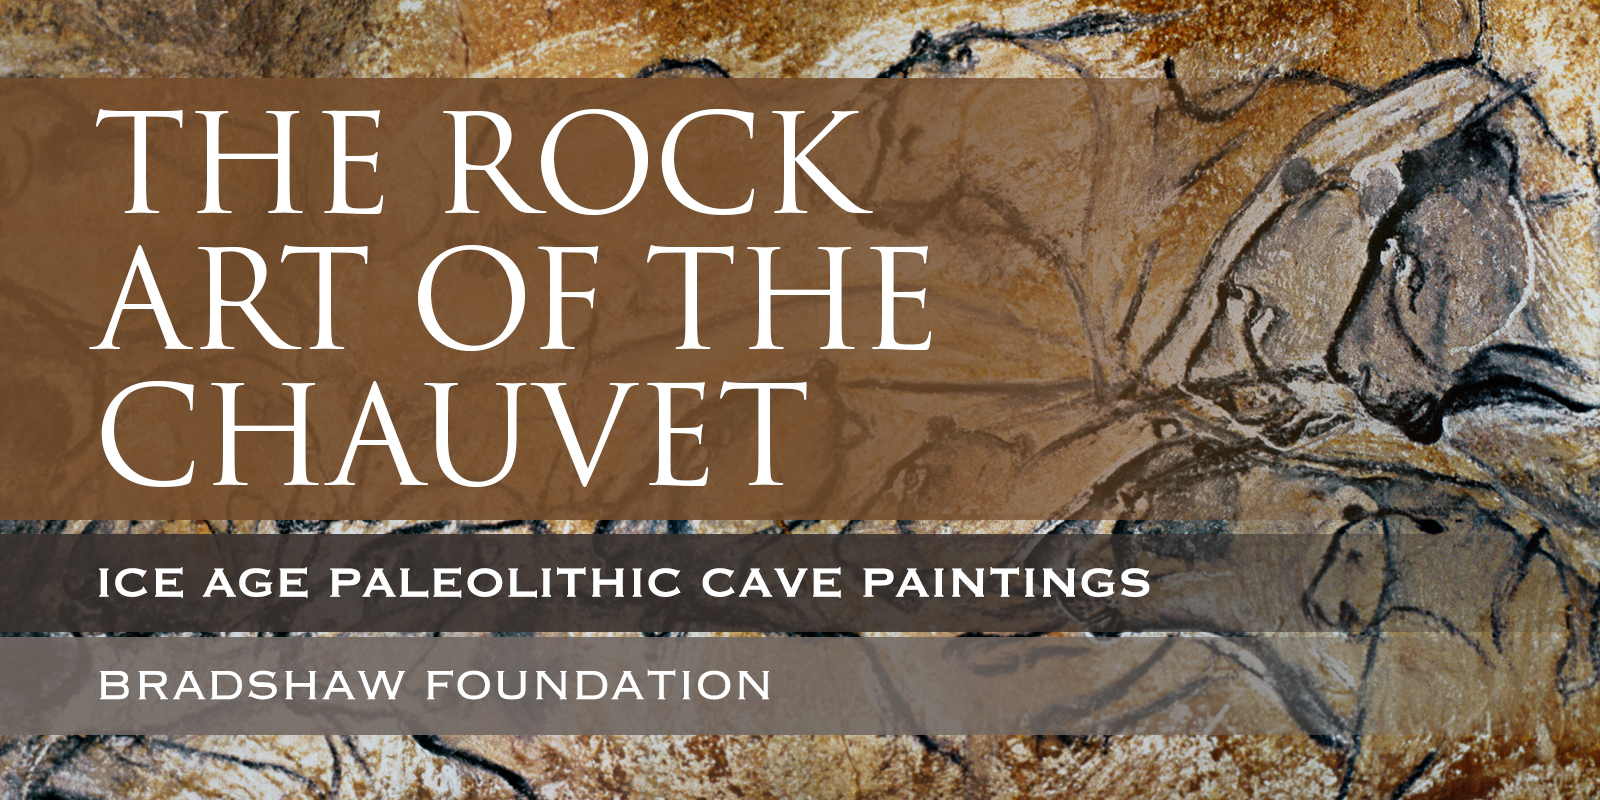 Chauvet Cave Paintings Rock Art France Bradshaw Foundation